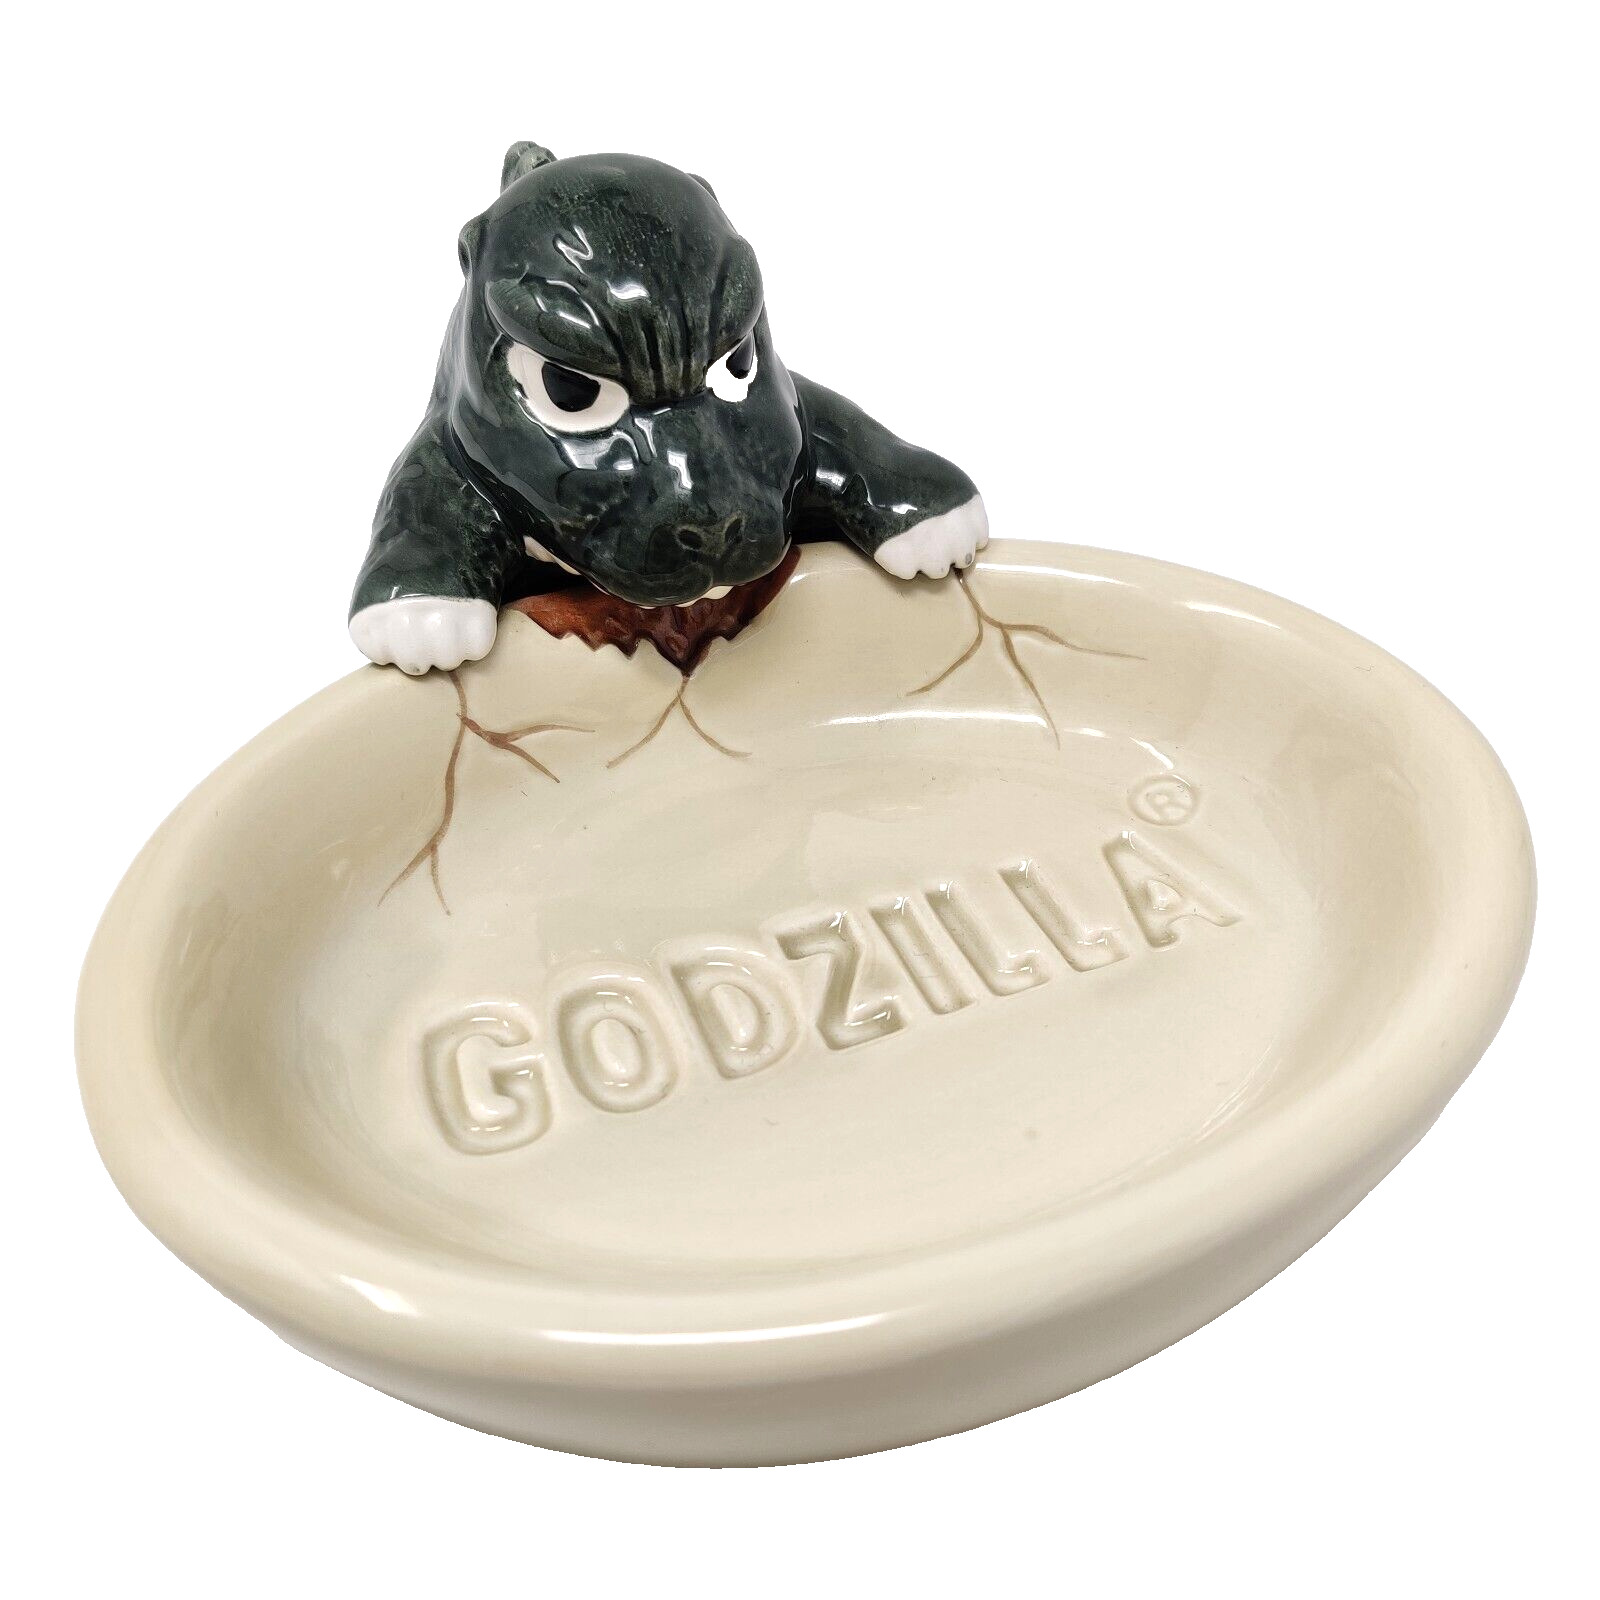 Rare Vintage Godzilla Ceramic Soap Trinket Dish Tray 1994 TOHO EIGA Japan Lizard